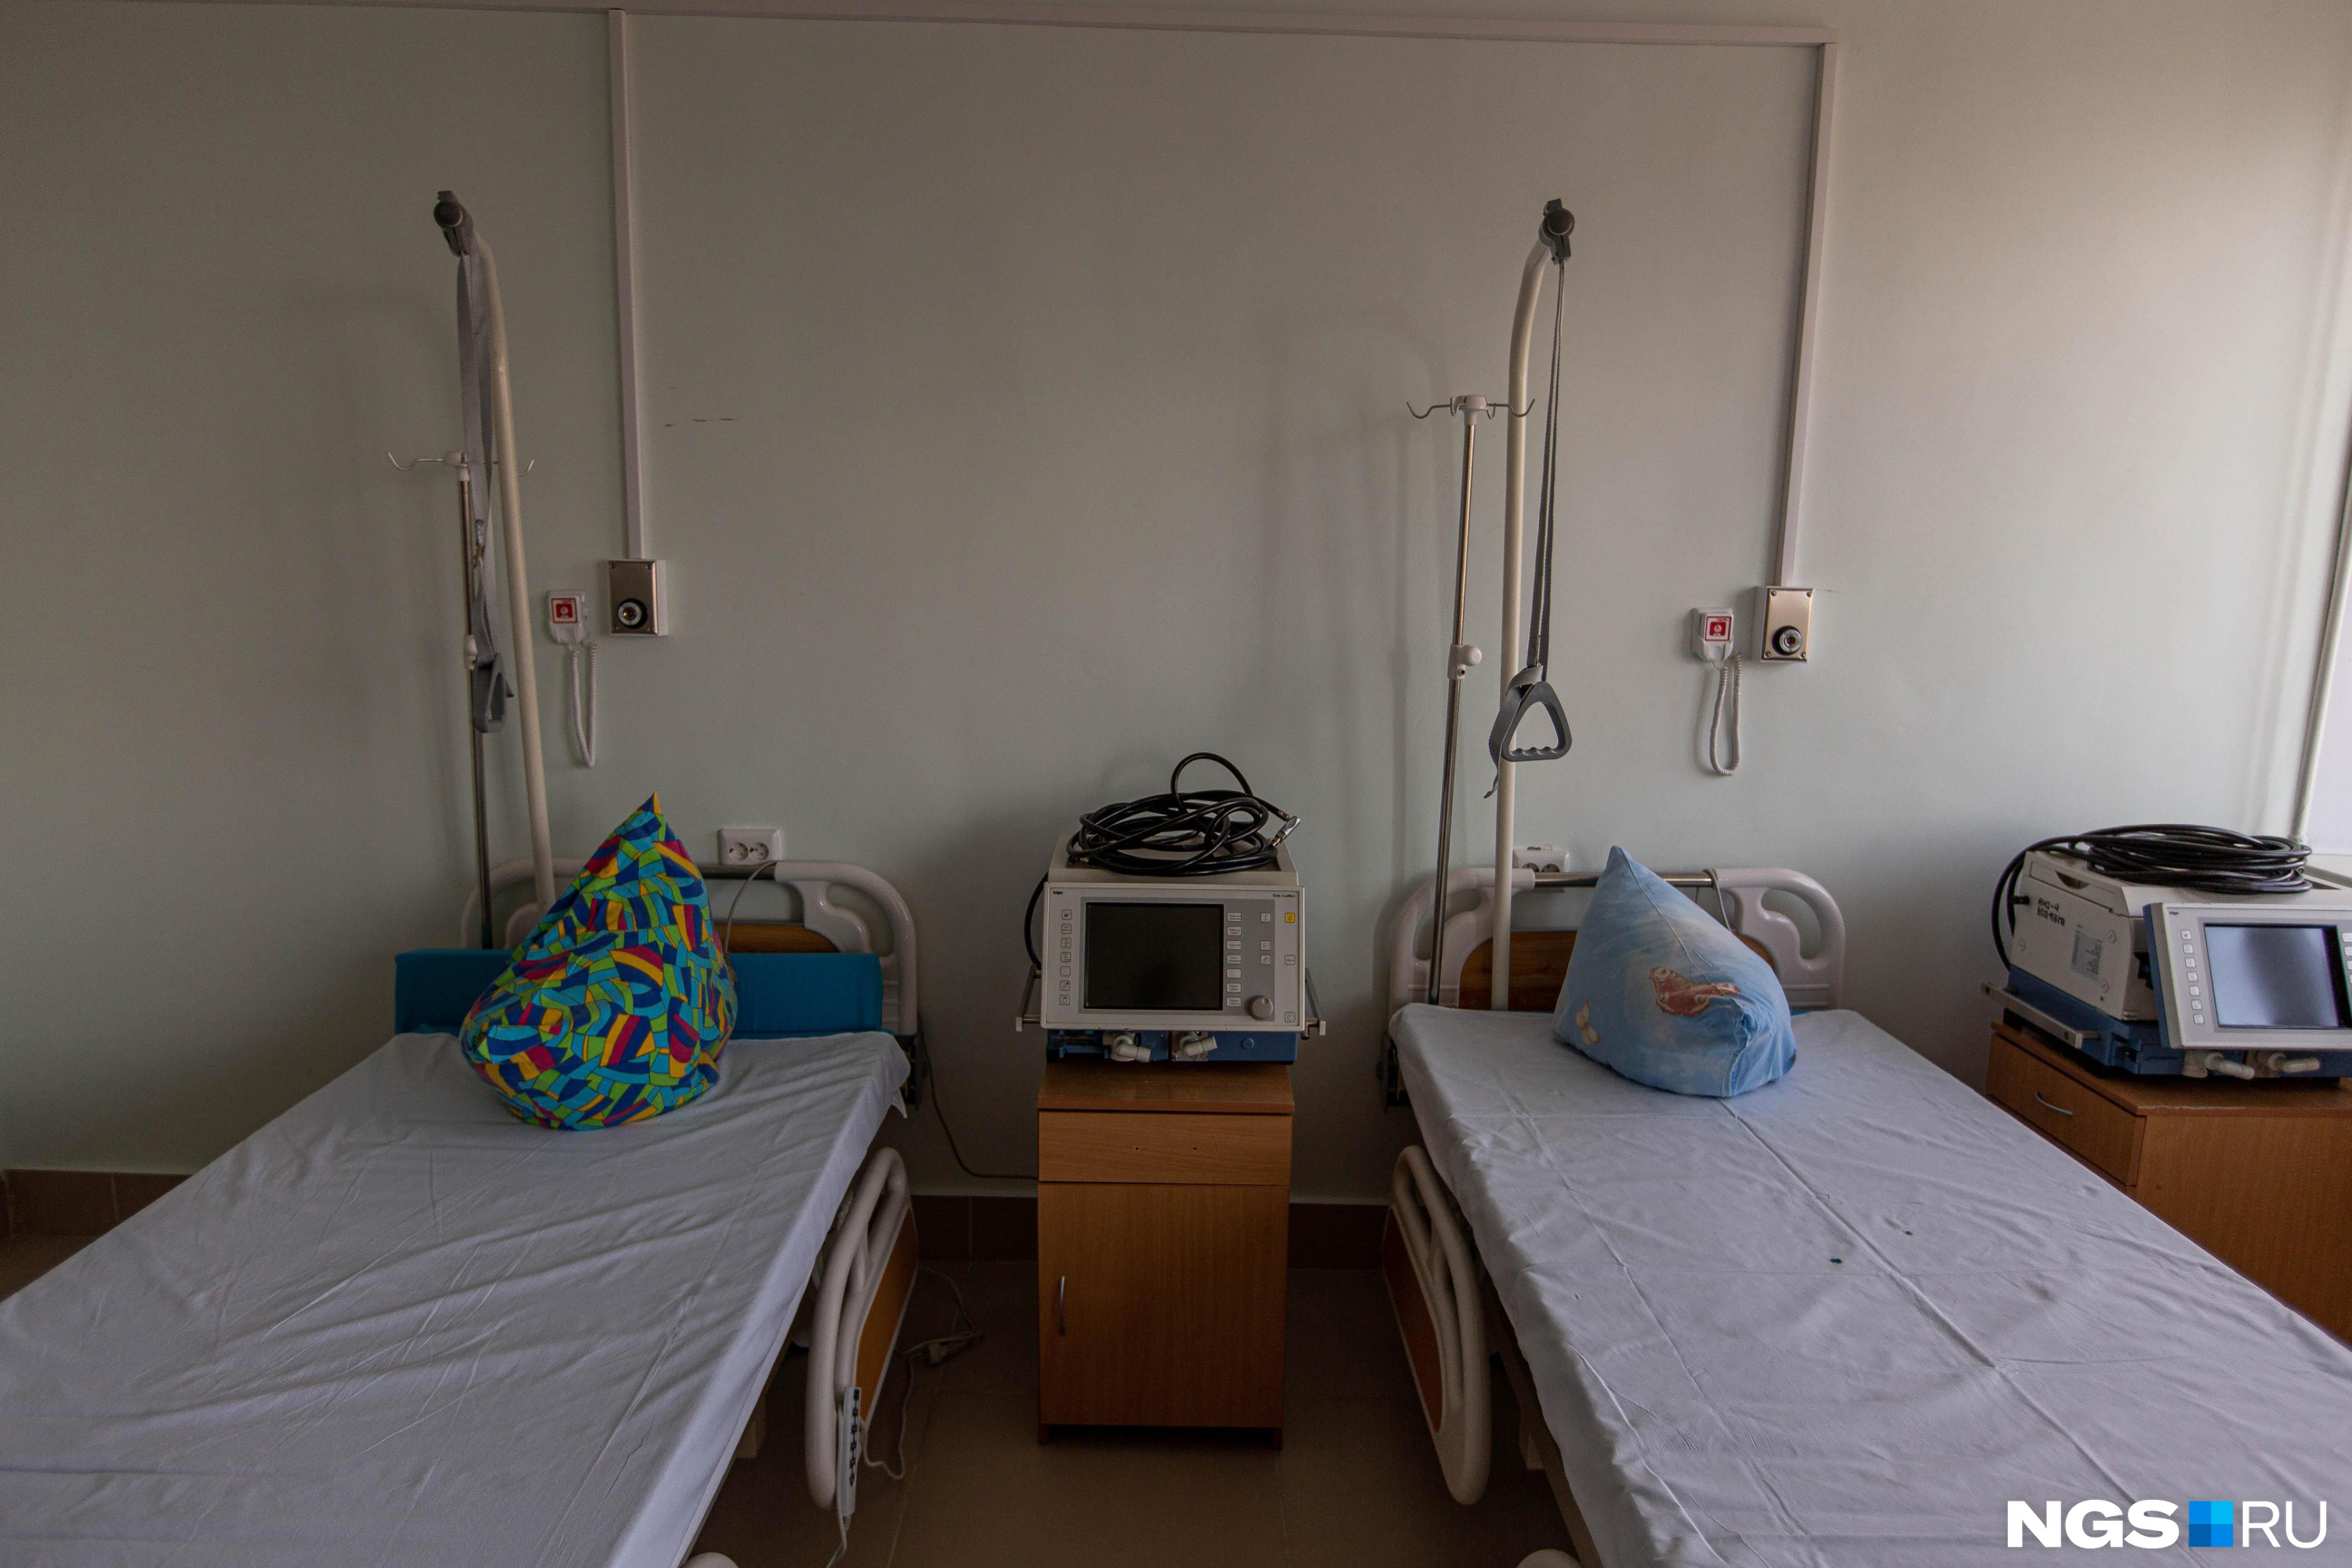 Пациент краевой больницы совершил суицид в Забайкалье